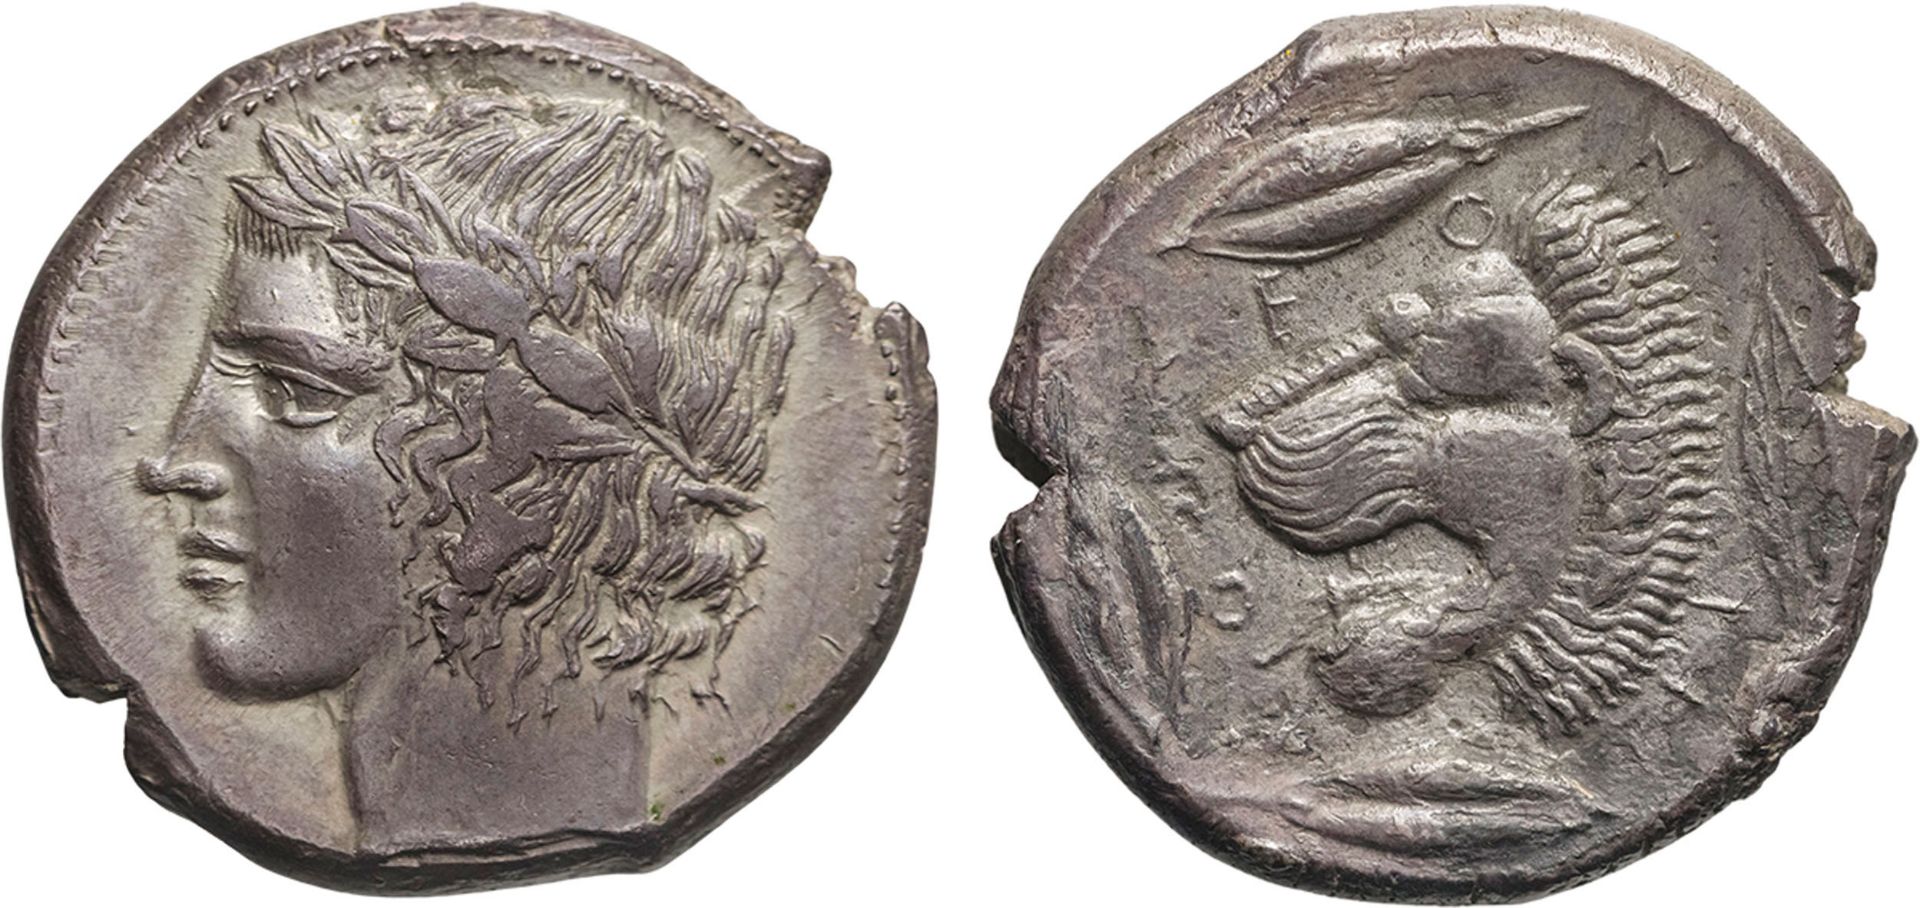 MONETE GRECHE. SICILIA. LEONTINI (CIRCA 425 A.C.). TETRADRACMA